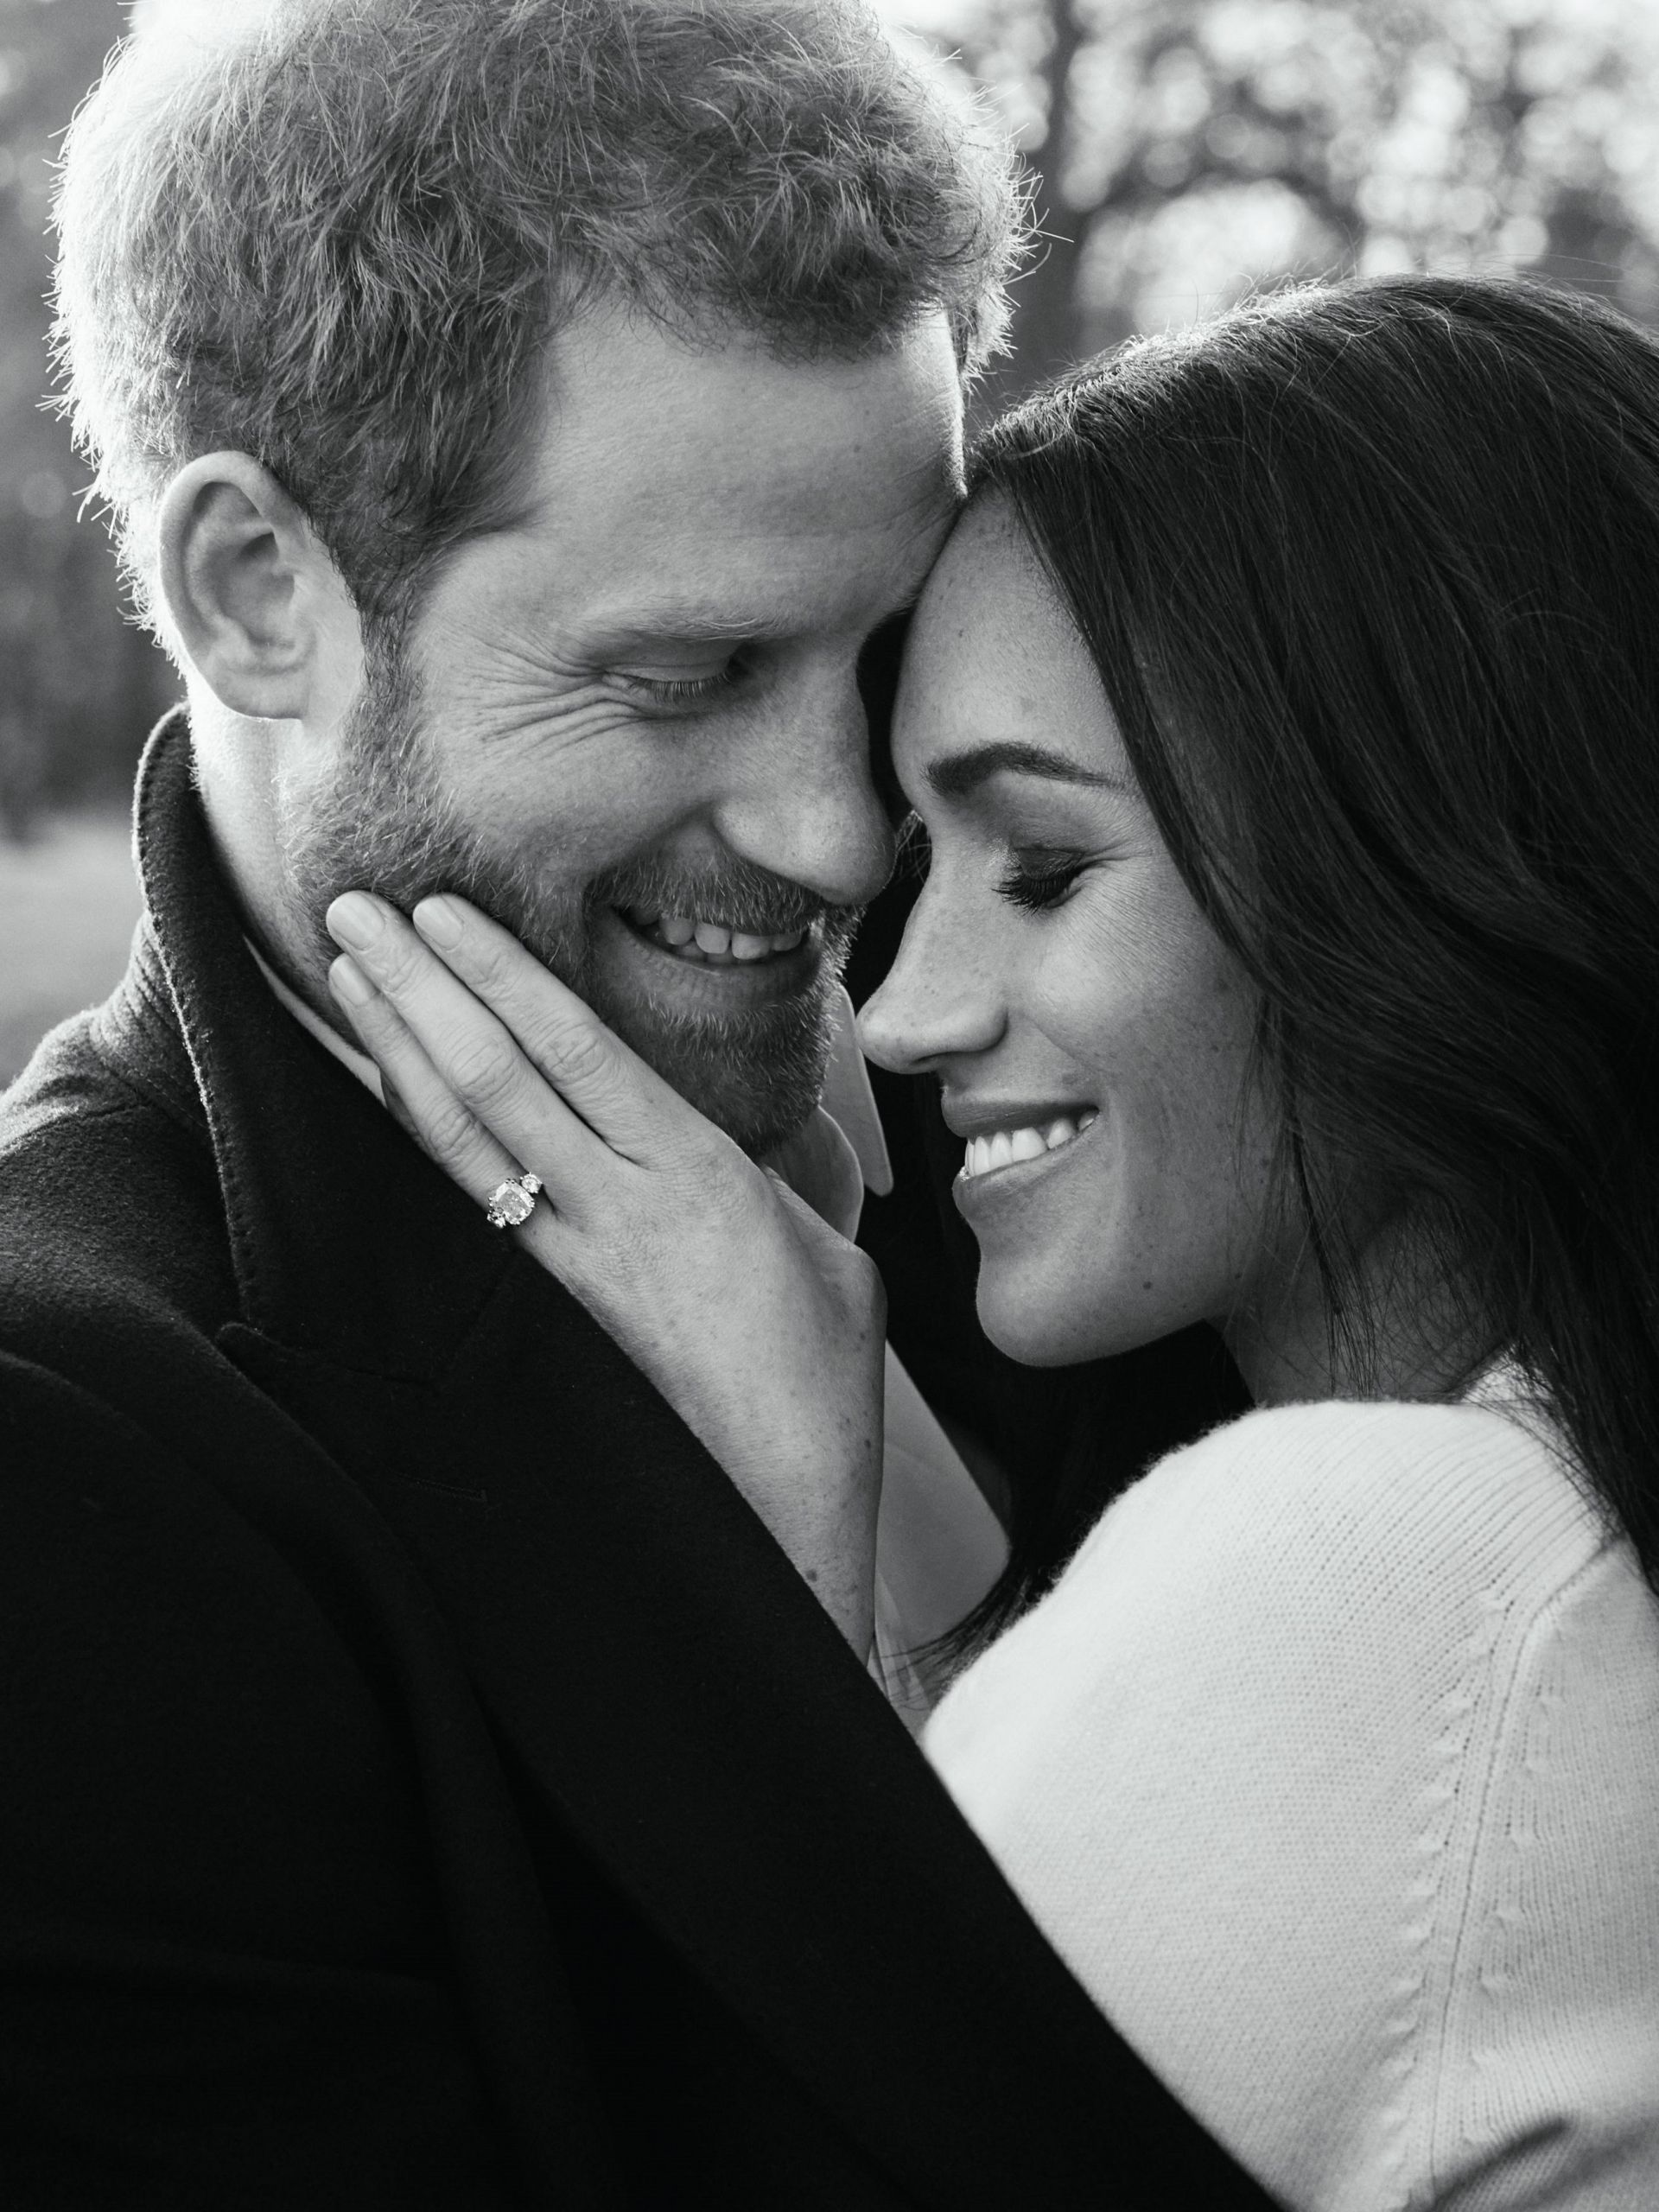 Fotografía oficial del compromiso del príncipe Enrique de Inglaterra y de la actriz estadounidense Meghan Markle realizada por el fotógrafo británico Alexi Lubomirski